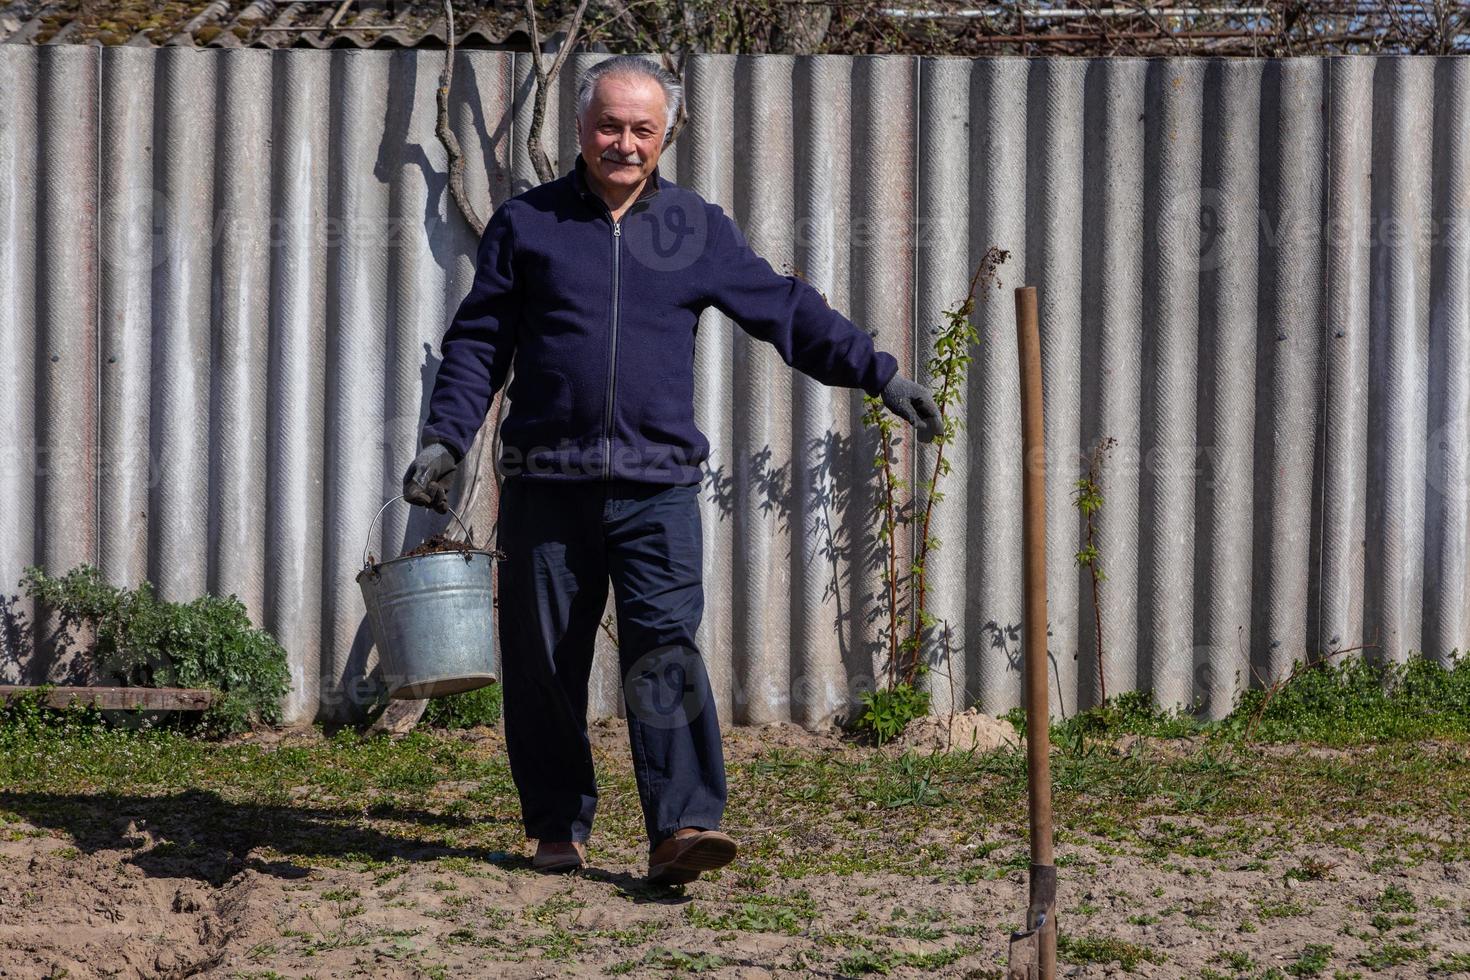 agricultor adulto com um balde carrega batatas no jardim foto